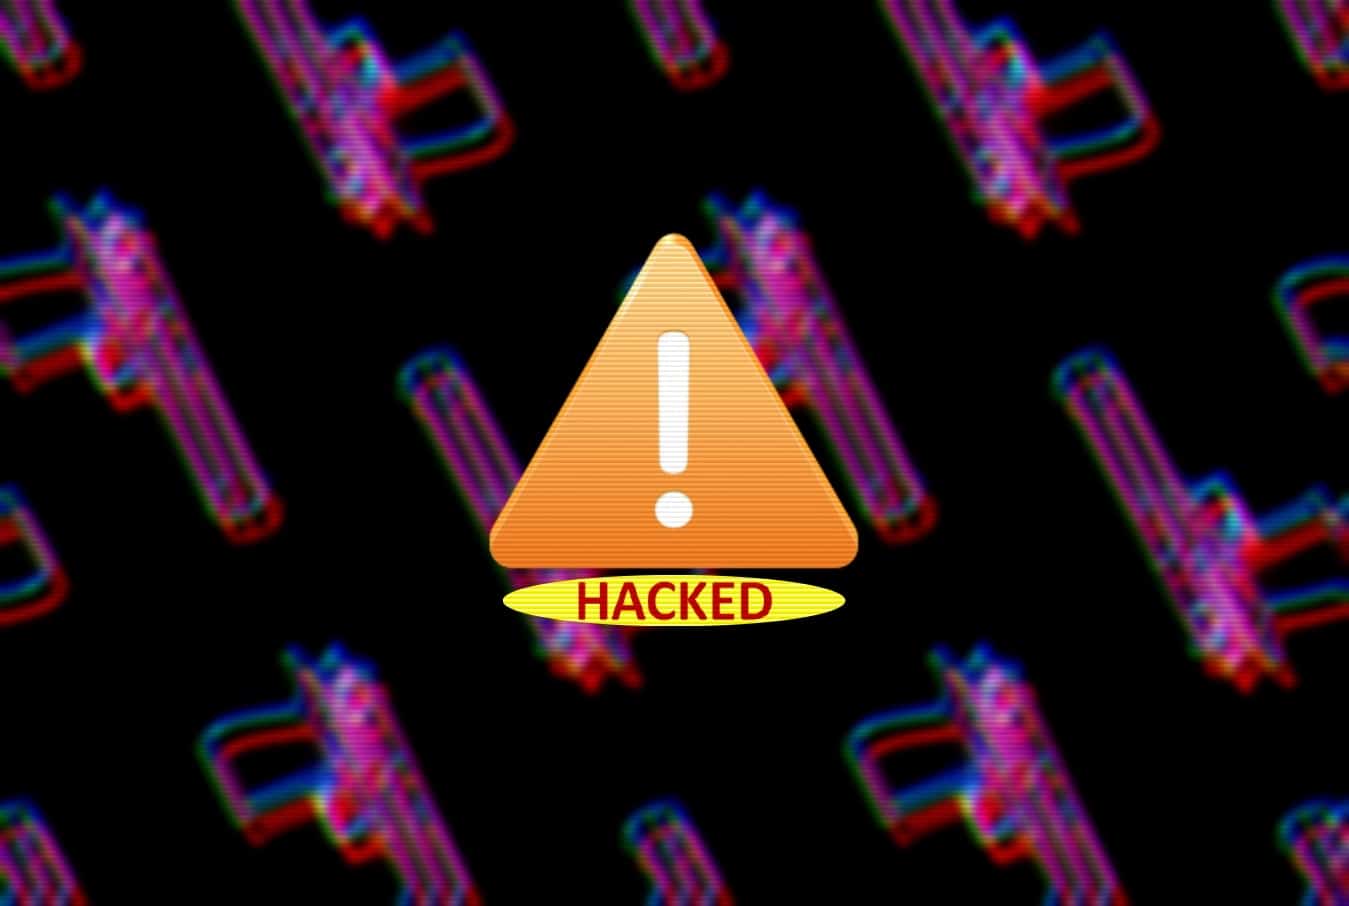 www.hackread.com